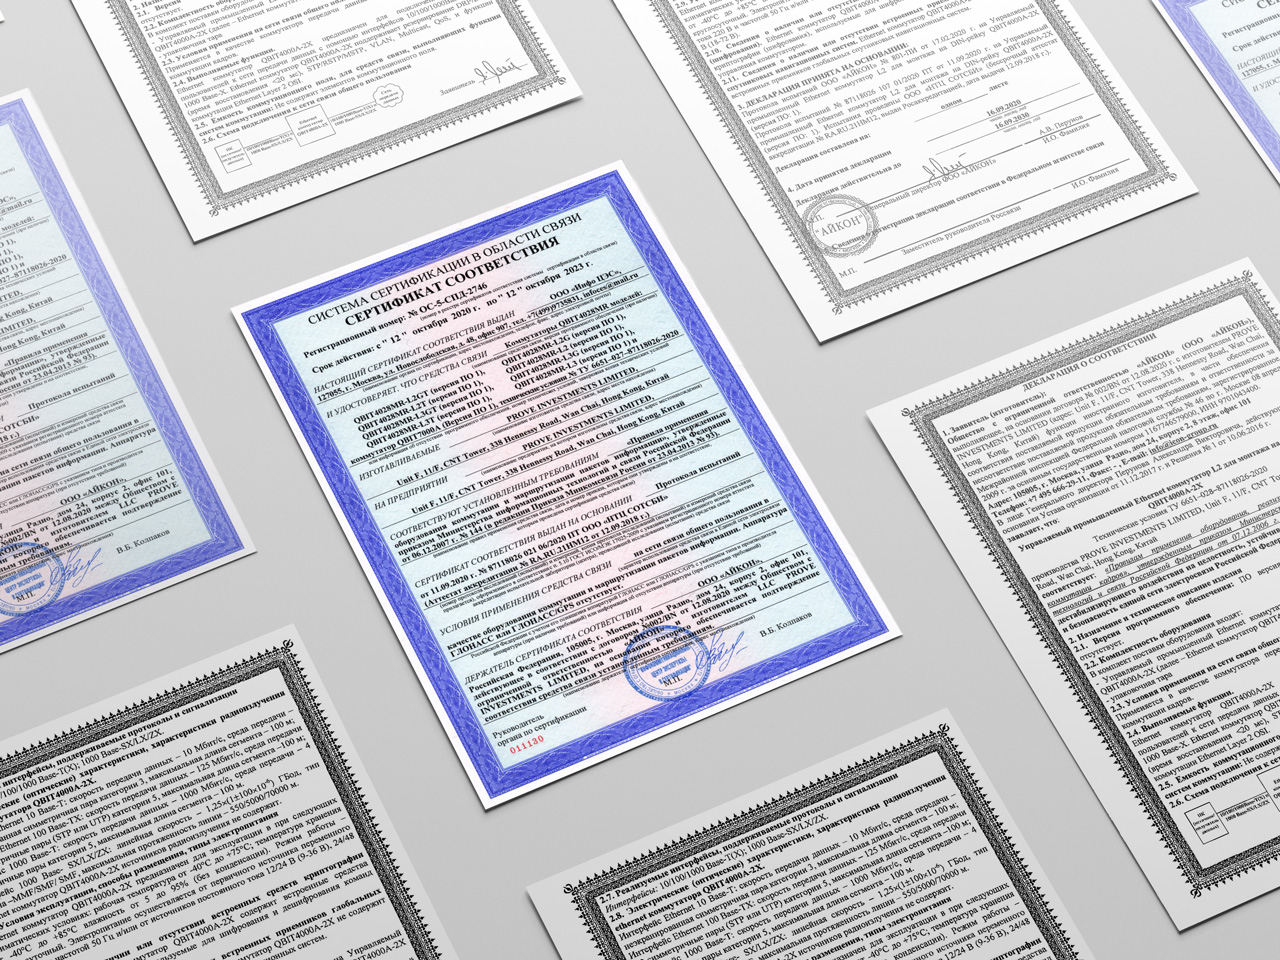 ICON INDUSTRIAL ENGINEERING получала на свое оборудование сертификат соответствия и декларацию о соответствии